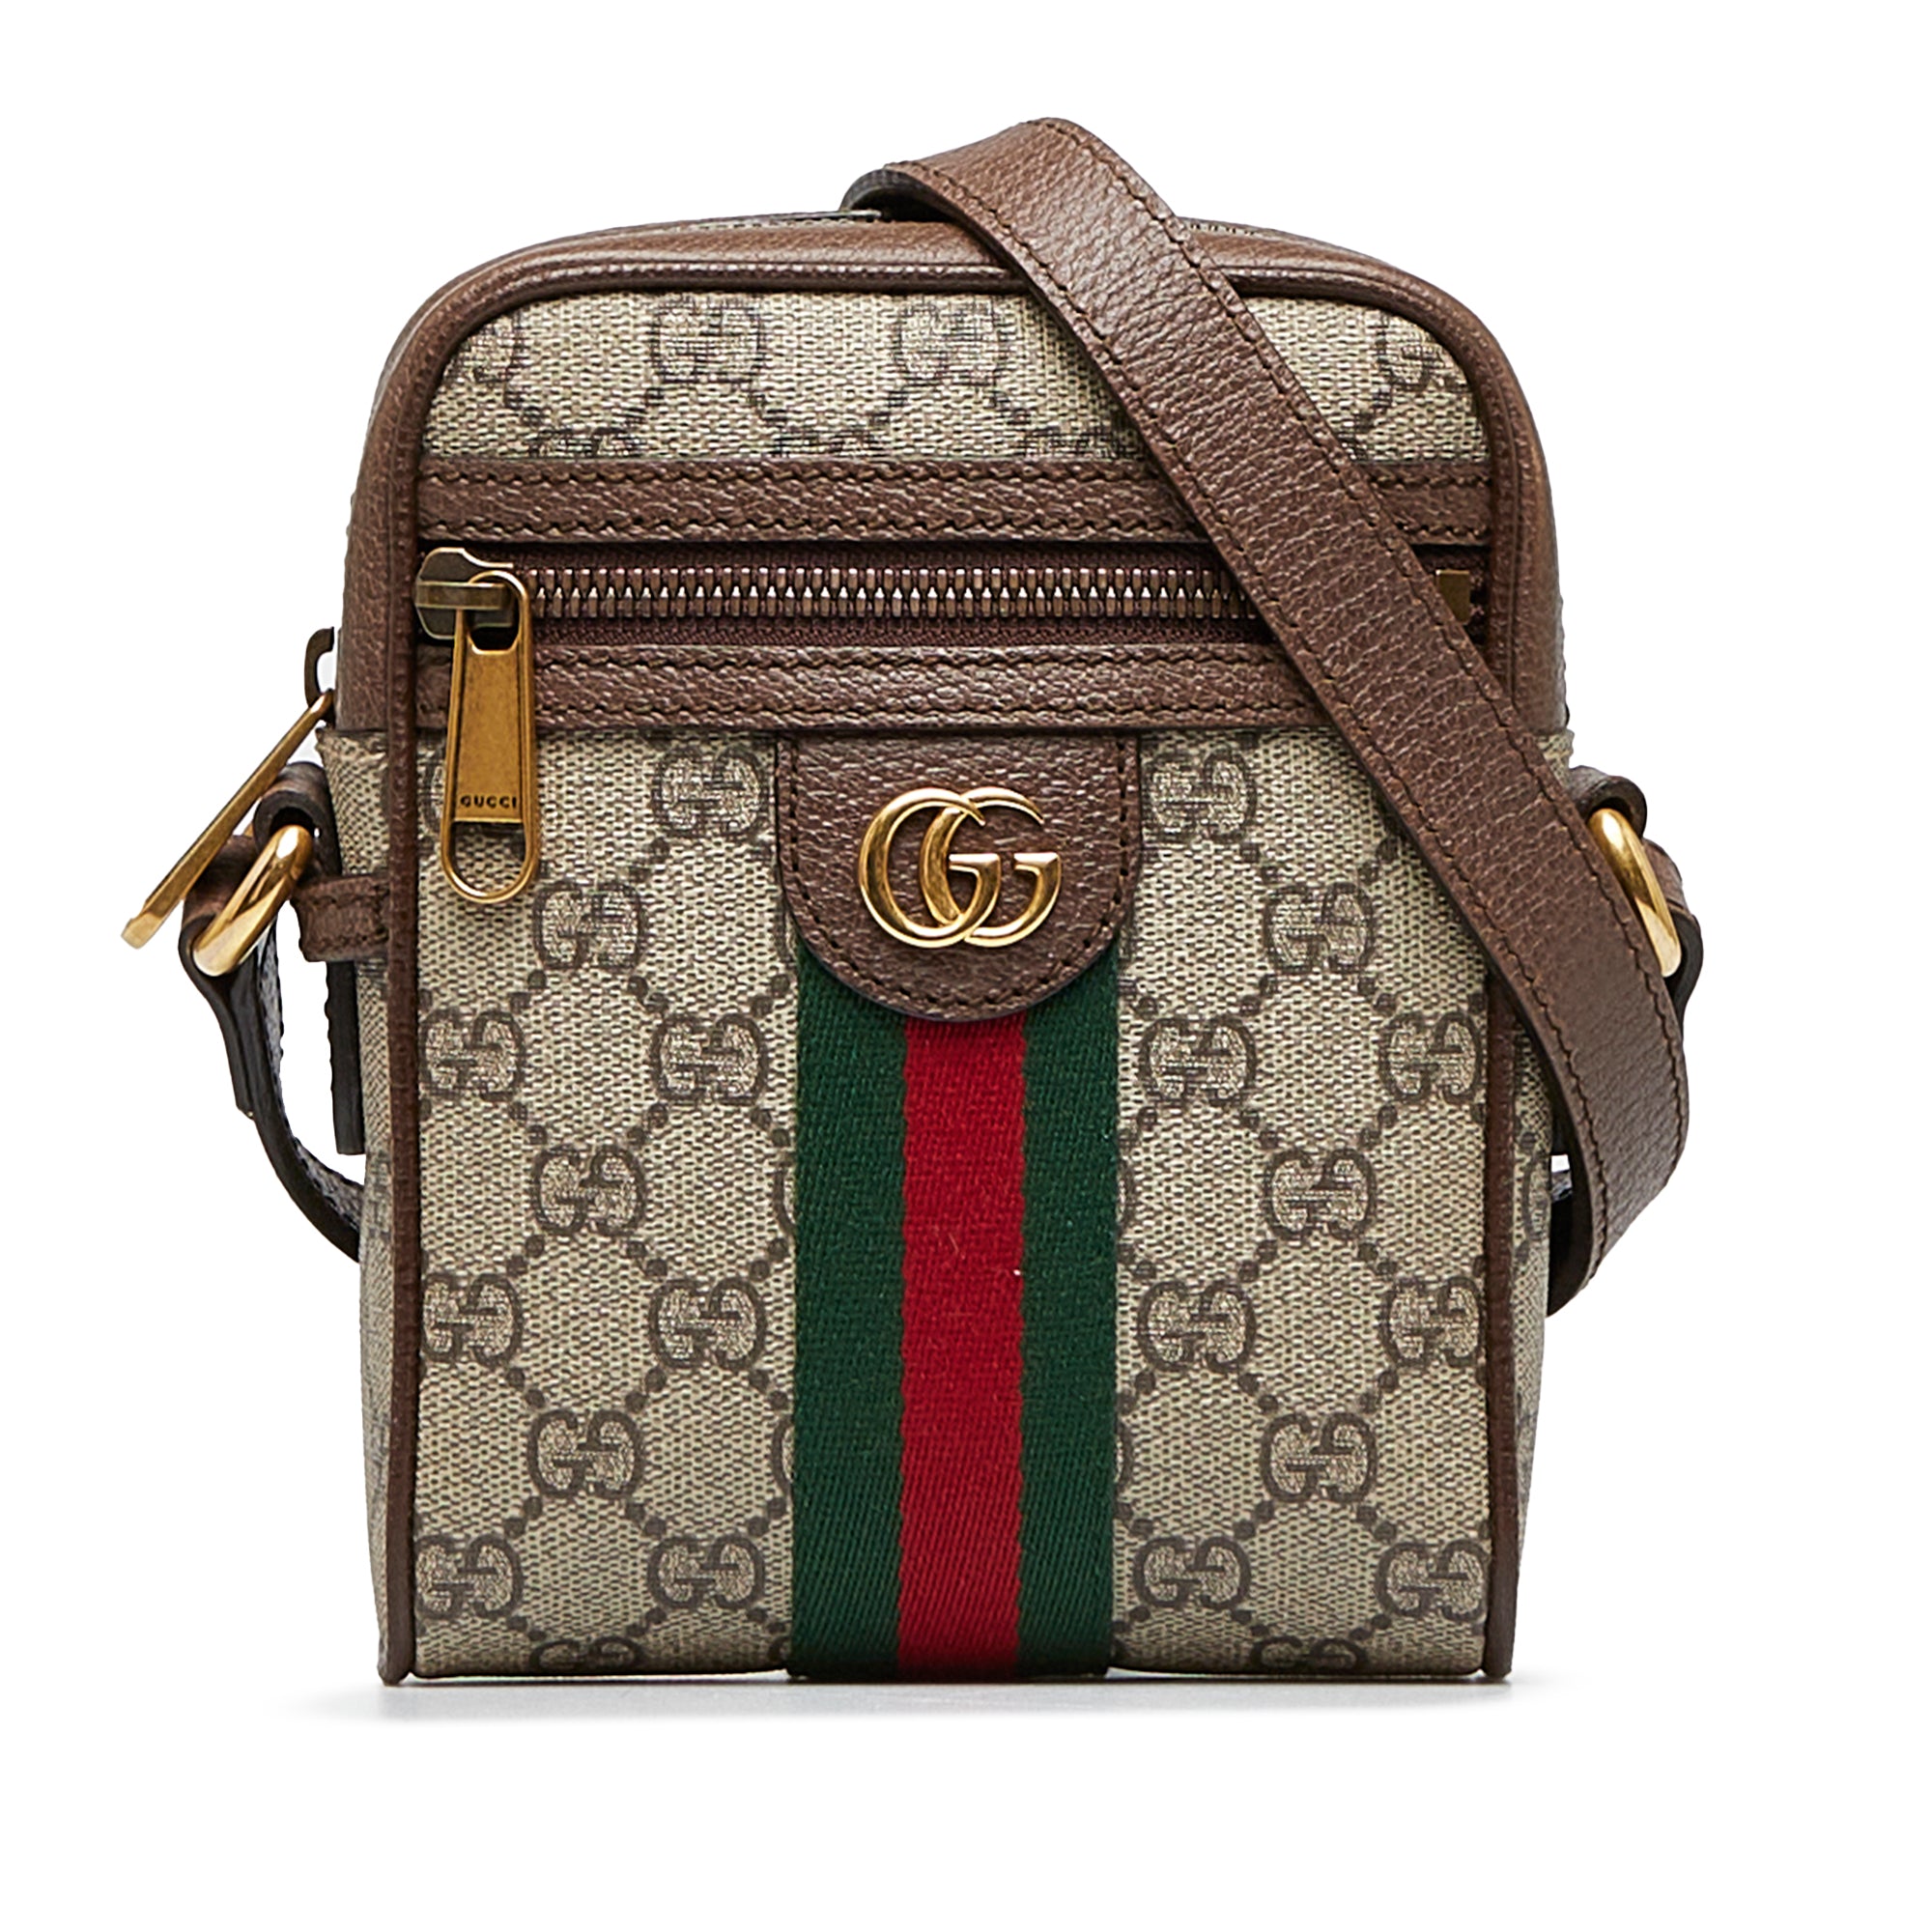 Gucci Sling Shoulder Bags